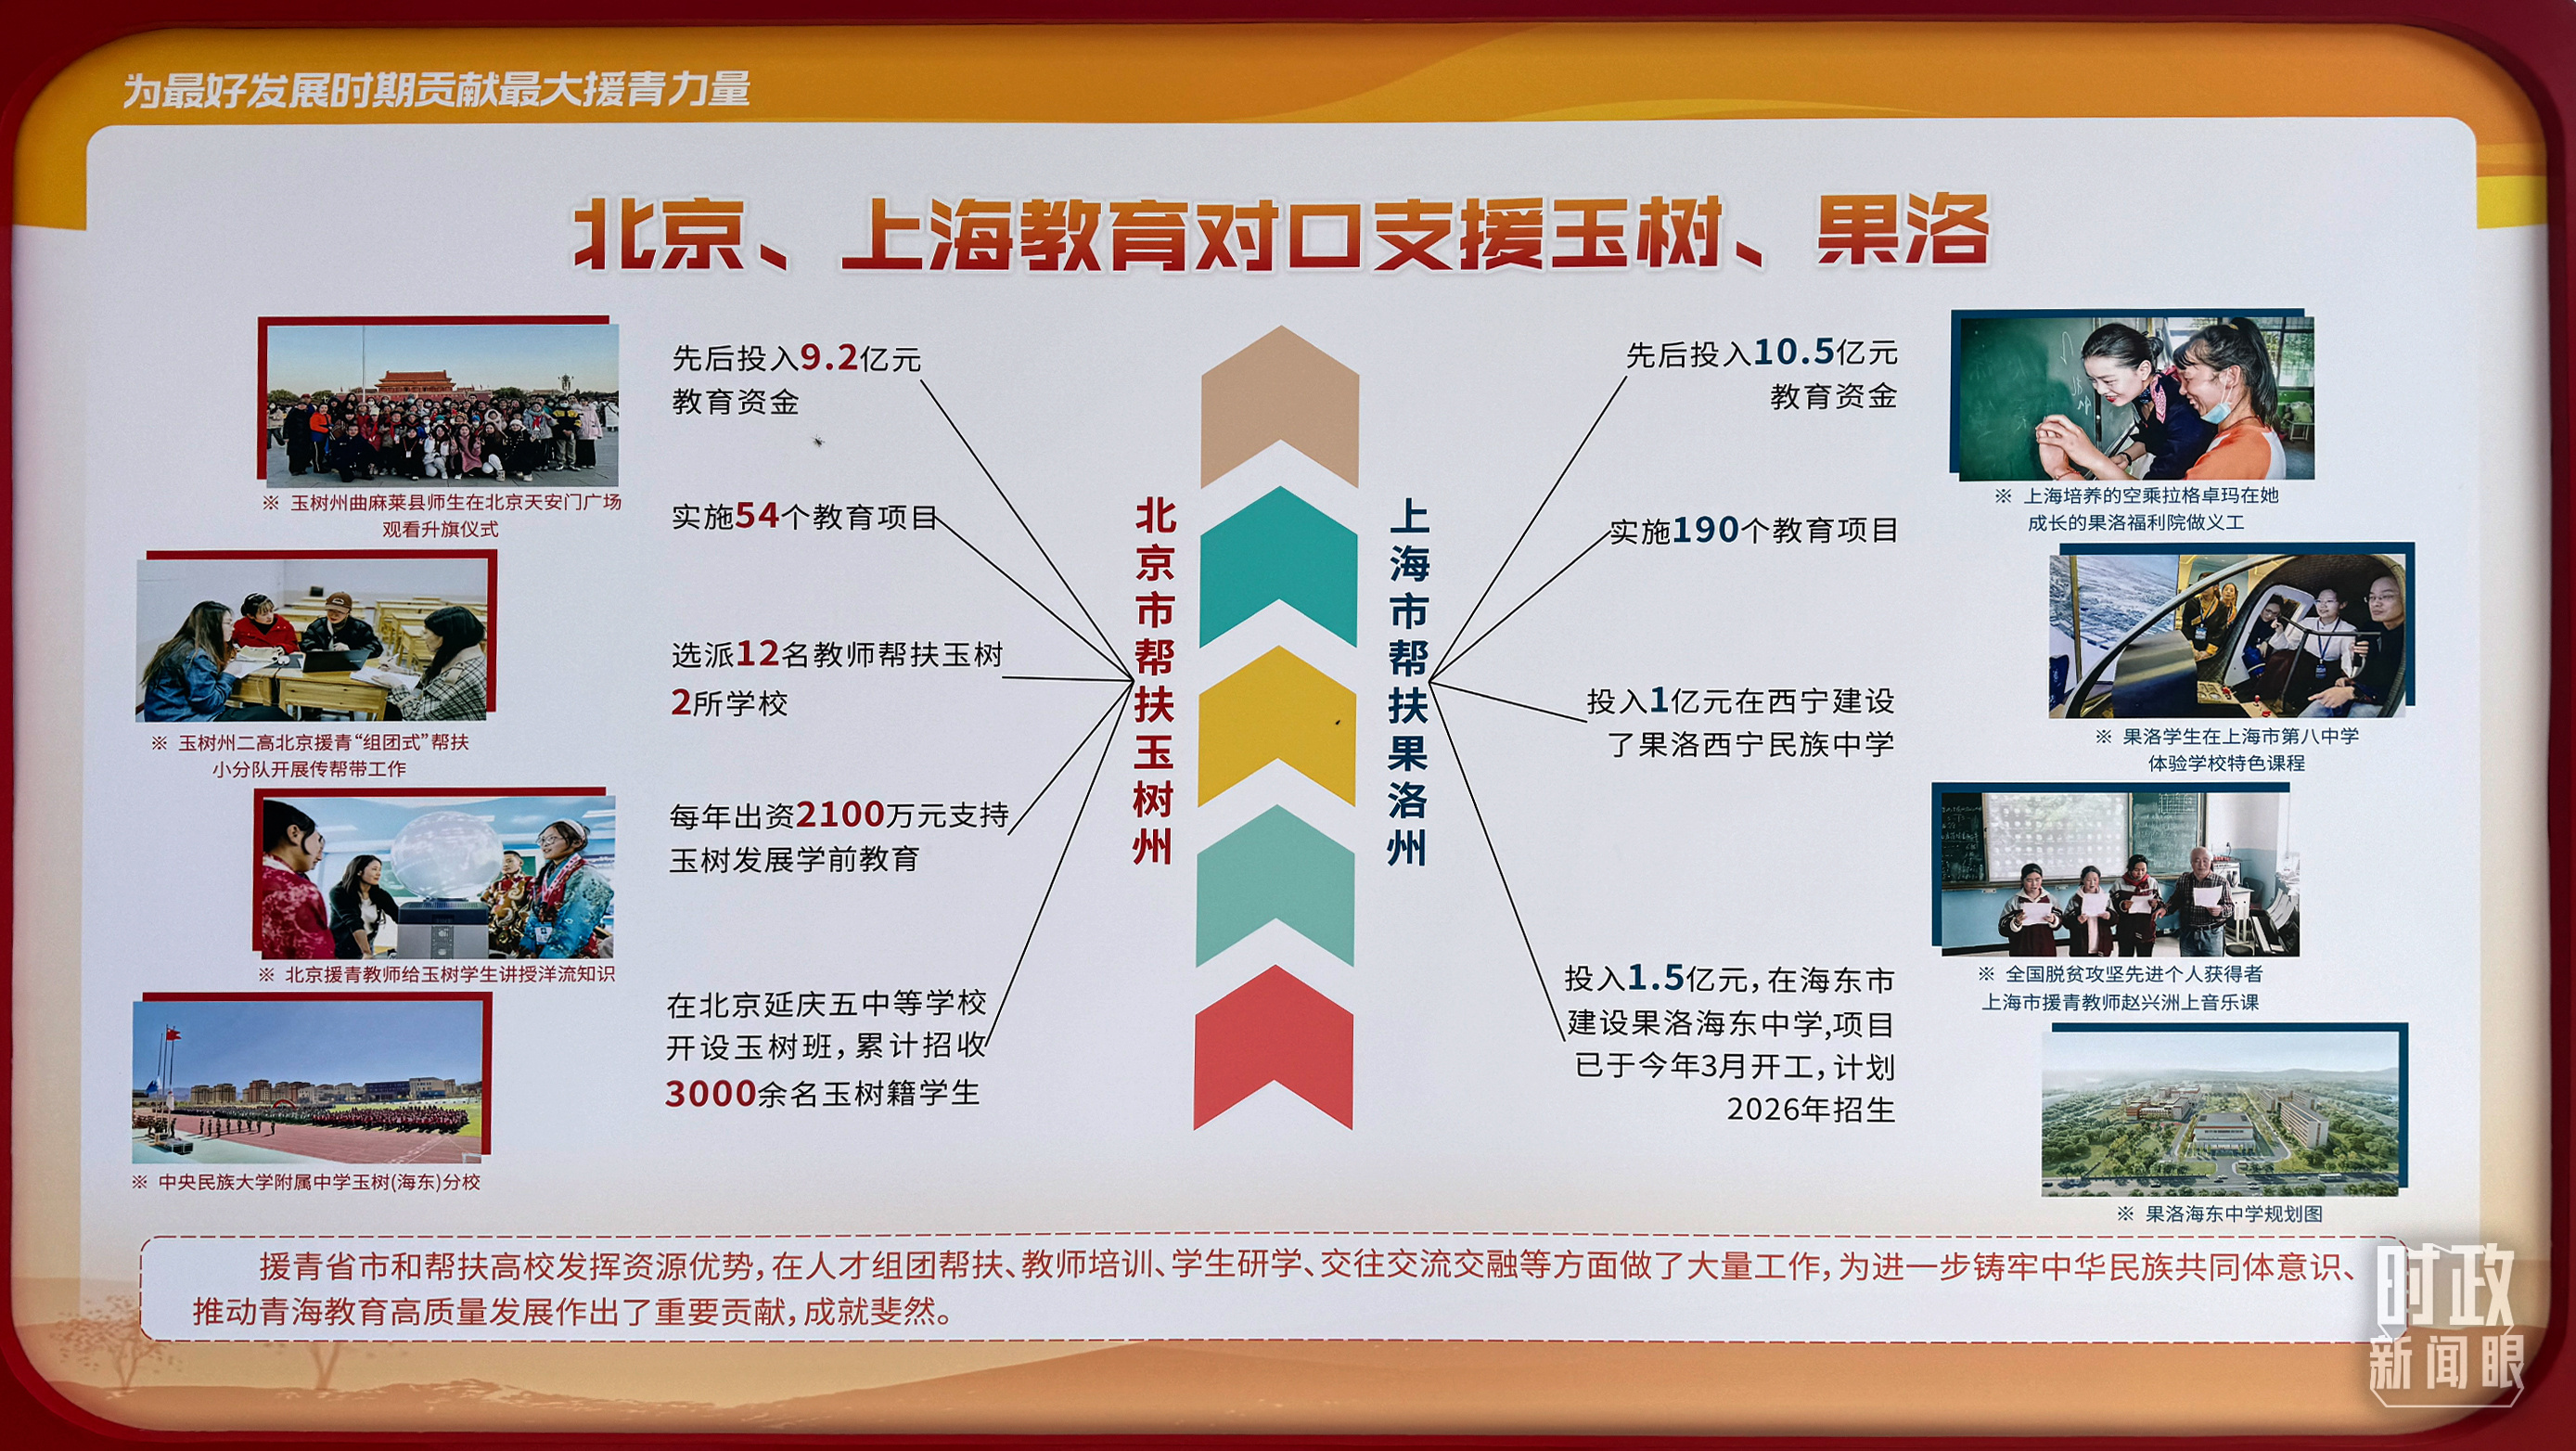 △北京、上海教育对口支援玉树、果洛。（总台央视记者黎兵拍摄）